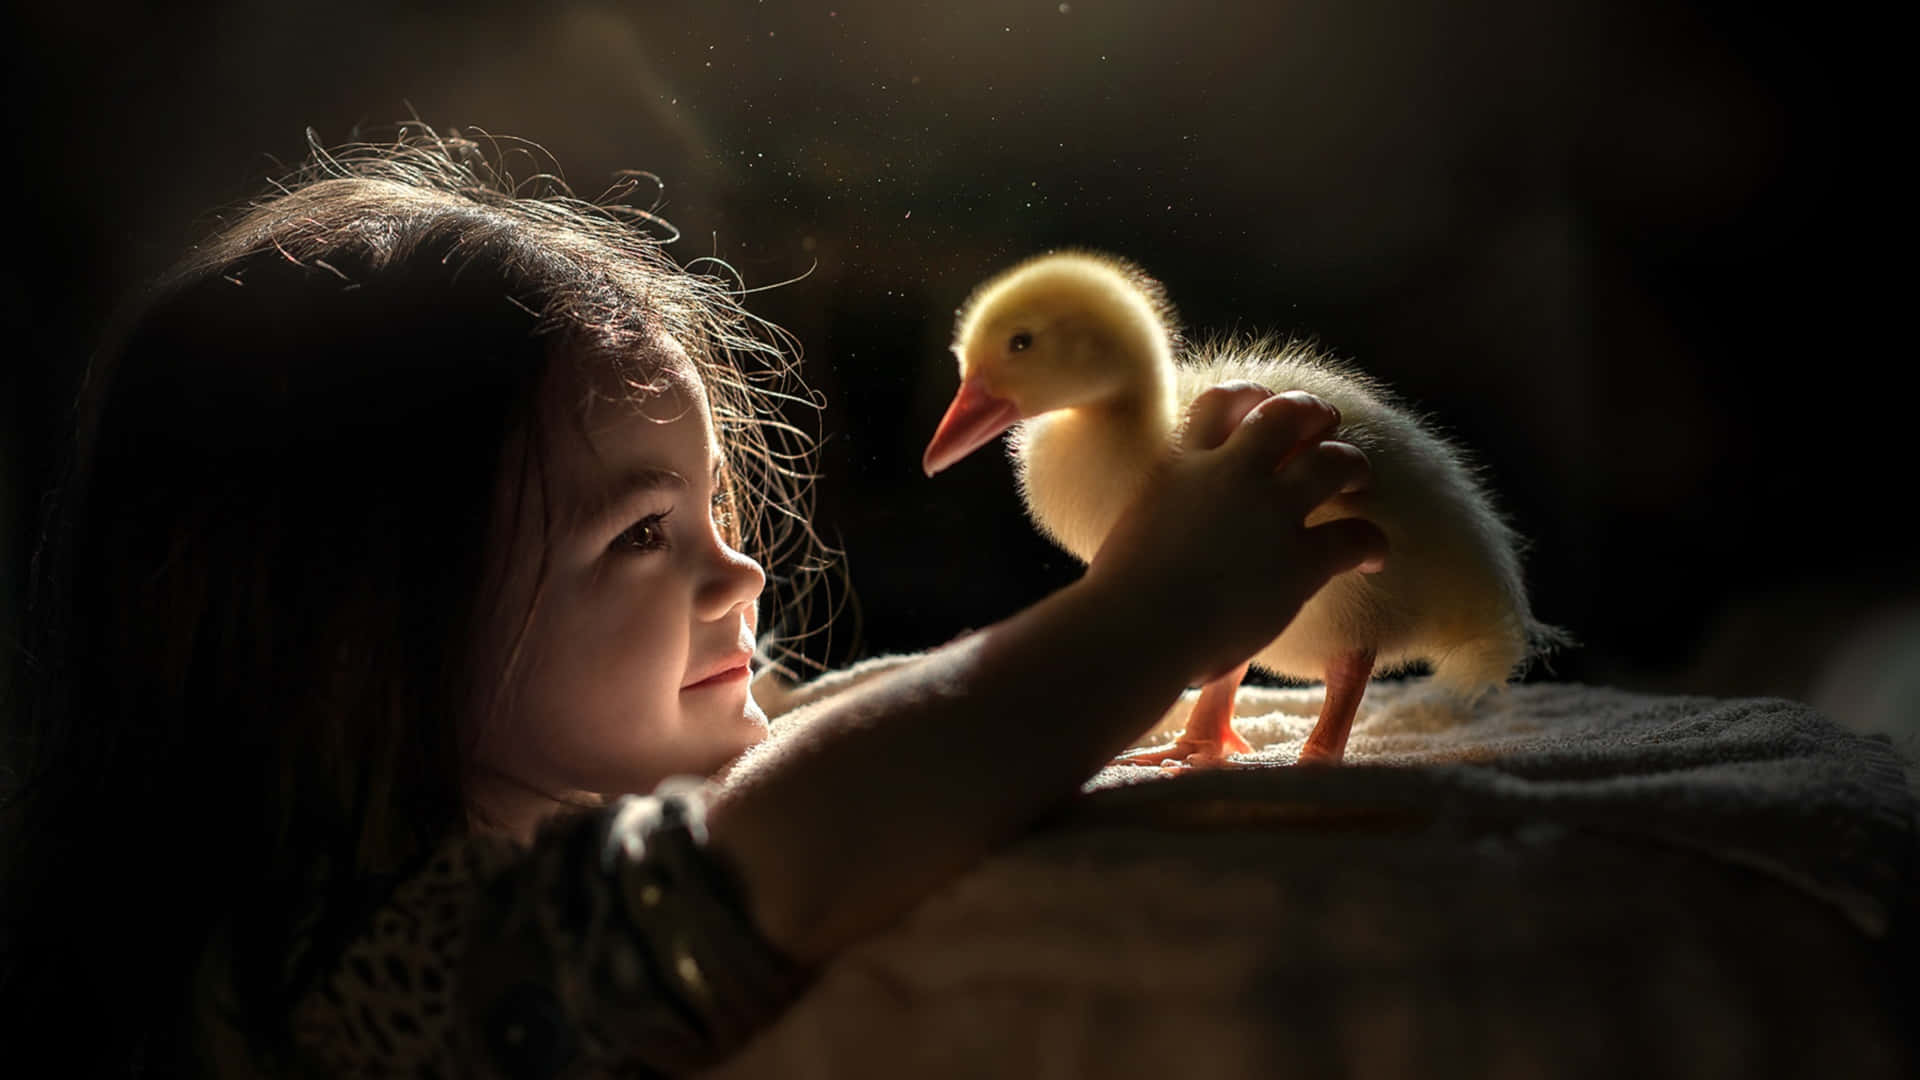 Little Girland Duckling Magical Moment Wallpaper